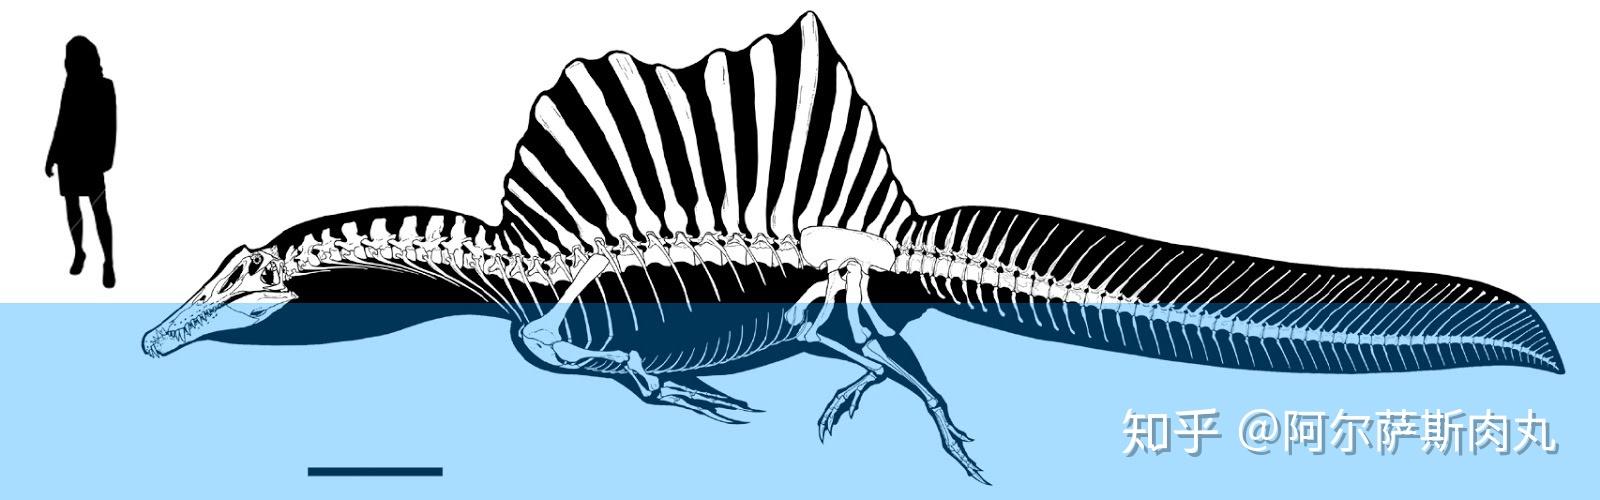 如何看待棘龙新出土的尾部化石新的复原长有尾鳍